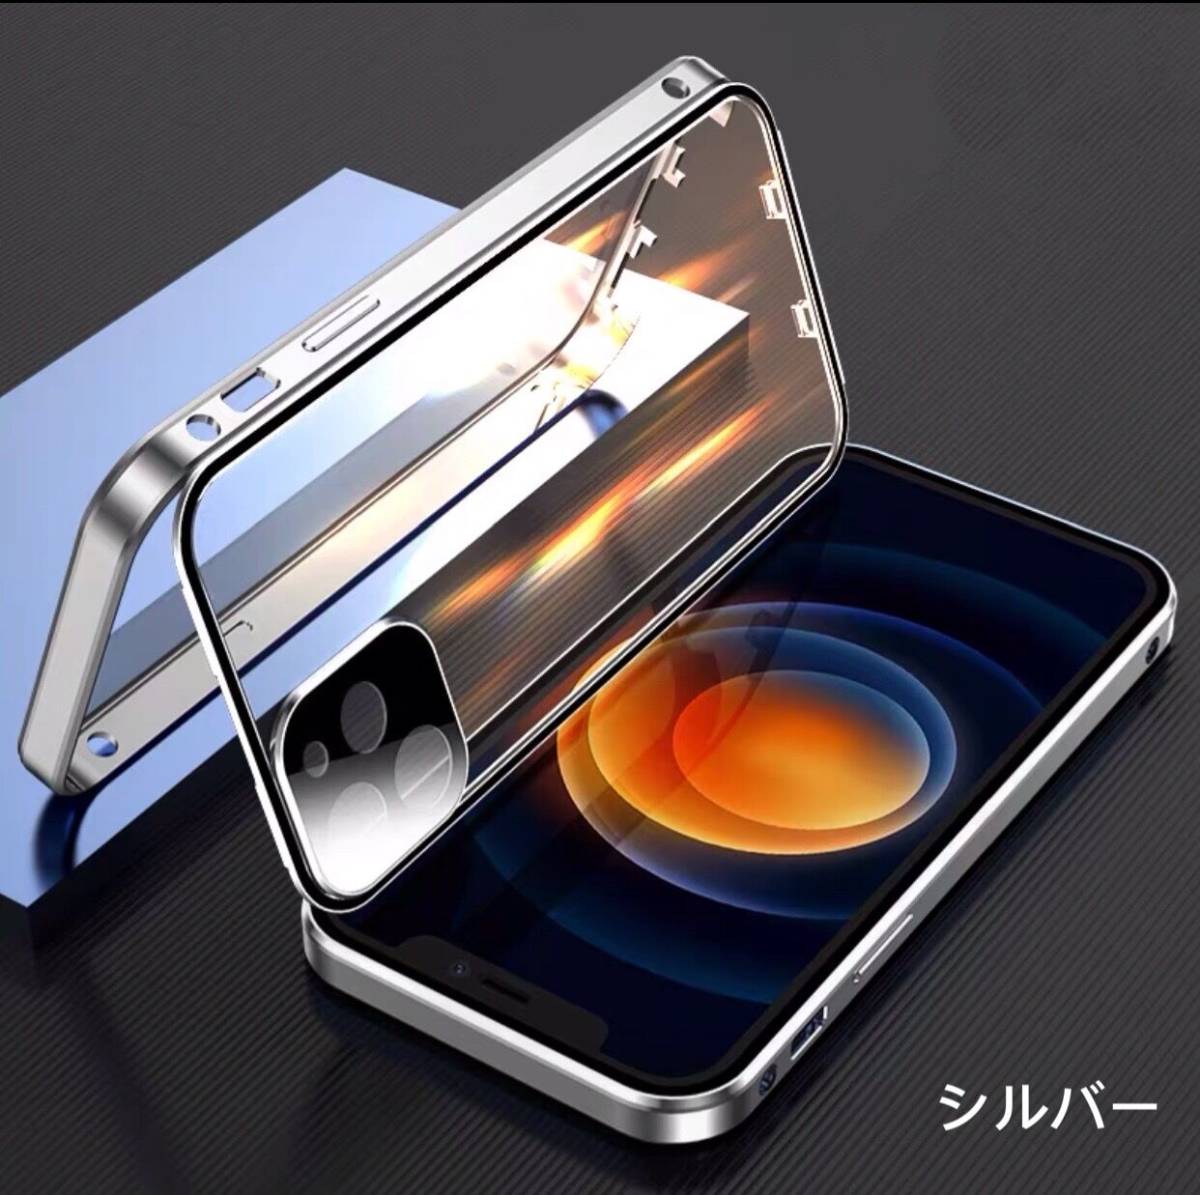 ダブルロック付き+前後強化ガラス+レンズカバー一体型 iPhone12/12Pro/12Promax/12mini/11 13 Pro max ケース アルミ合金 強力磁石 耐衝撃